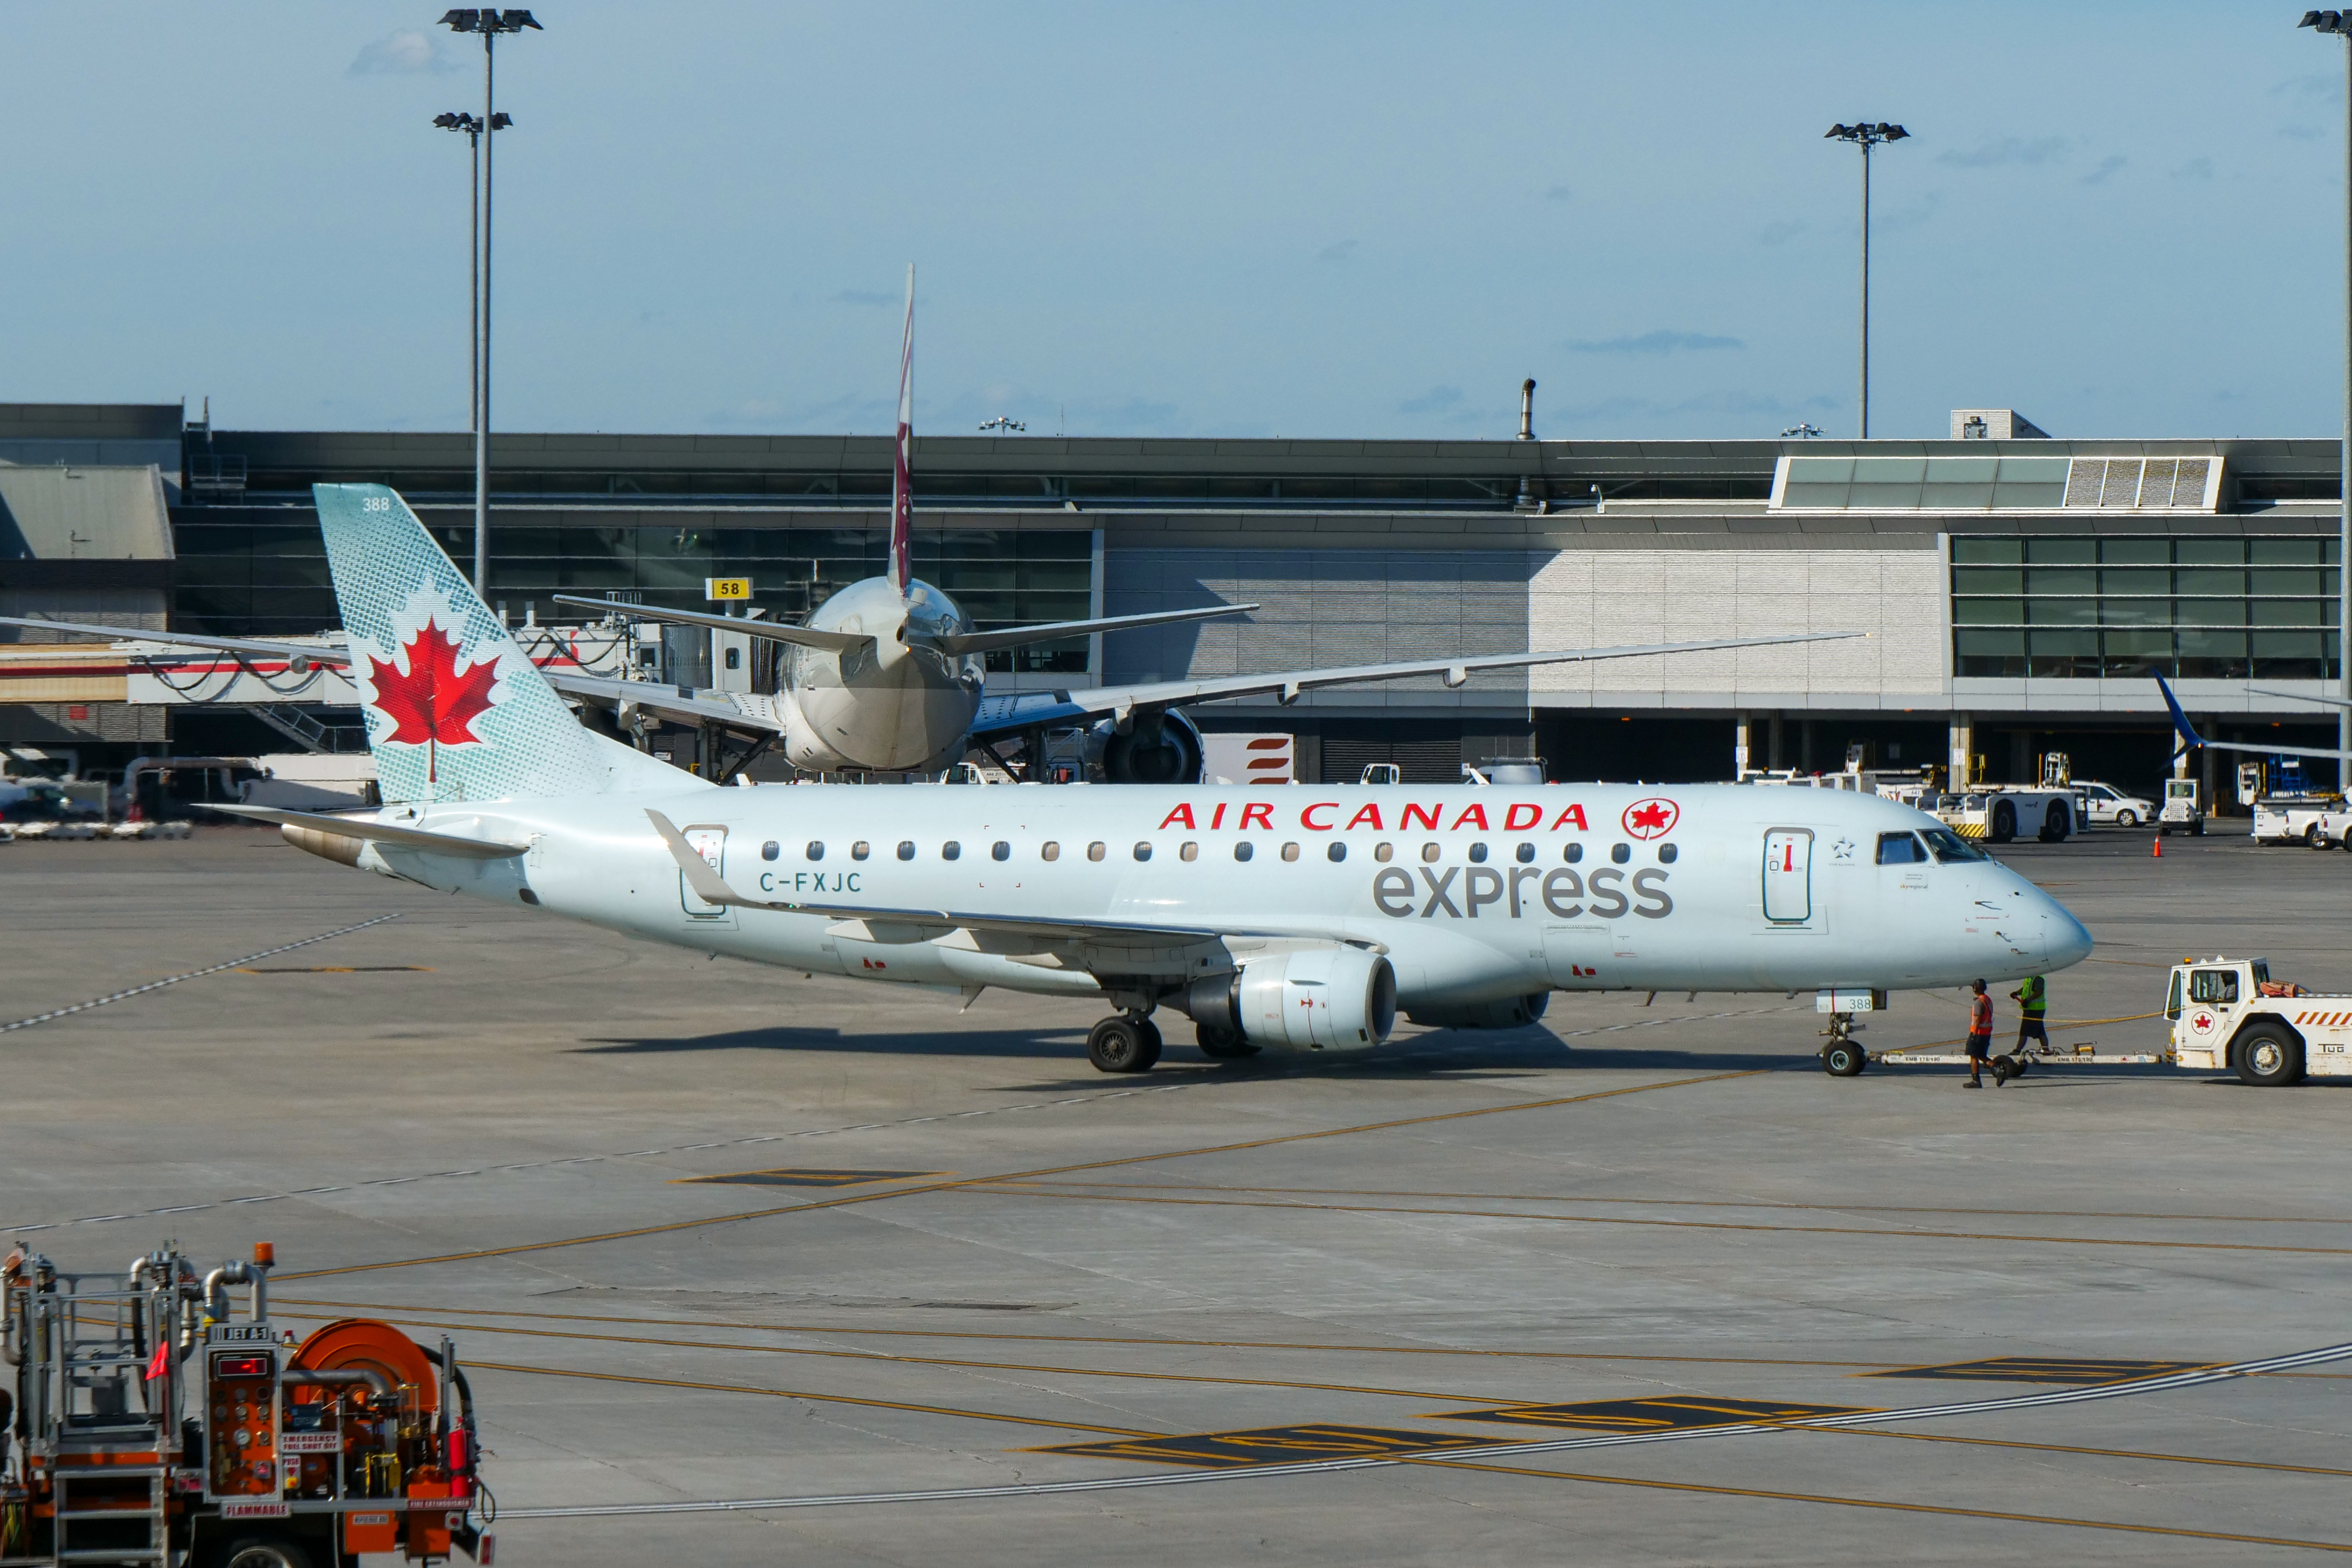 File:Air Canada Express - Embraer E175 - C-FXJC (Quintin Soloviev